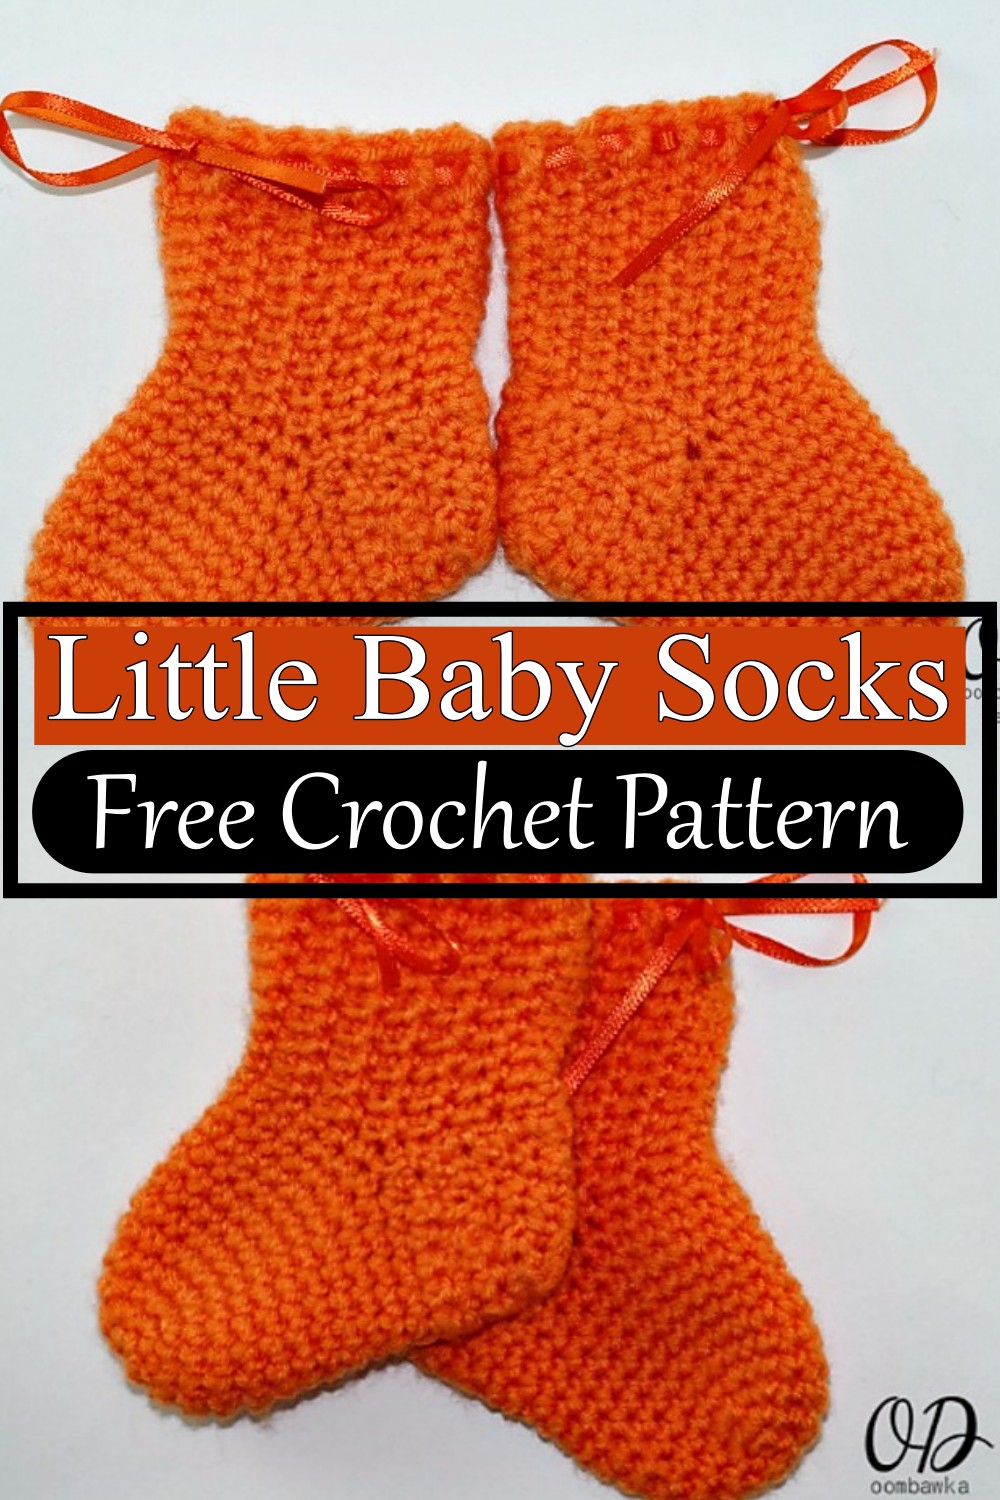 Little Baby Socks